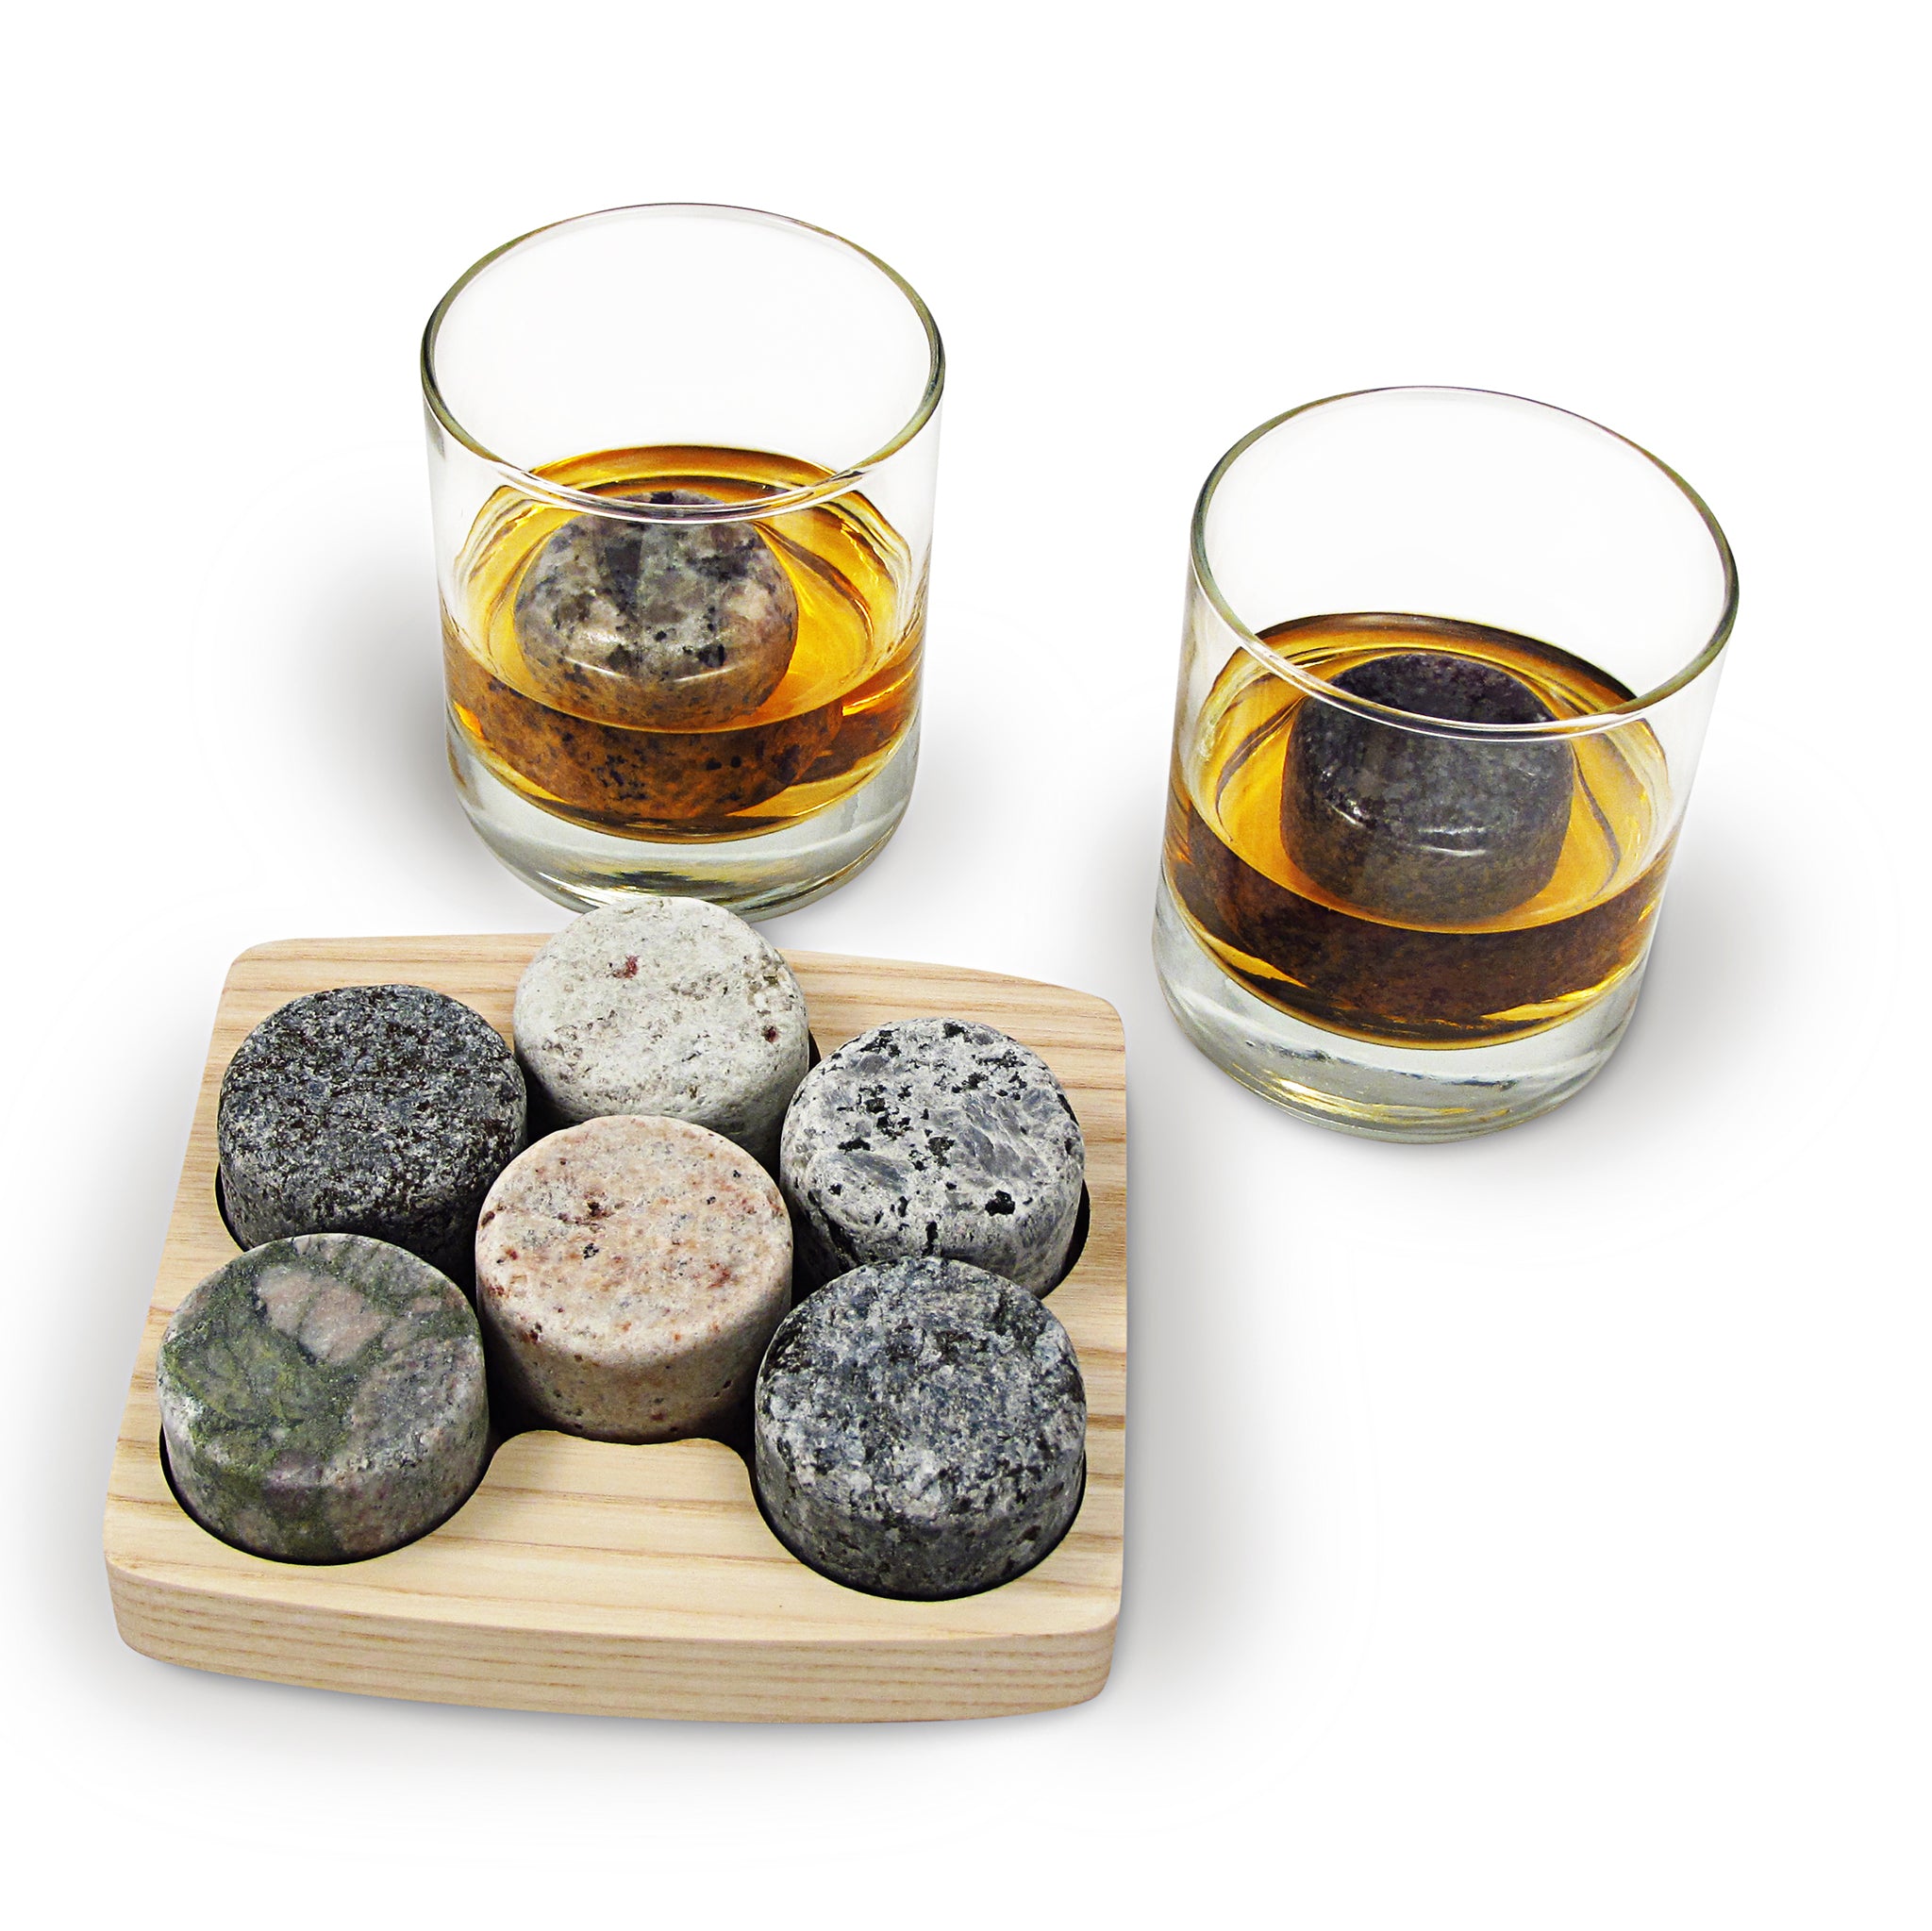 Набор для виски с камнями. Your Highball набор для виски. Камни для виски. Камушки для виски. Наборы камушки для виски.